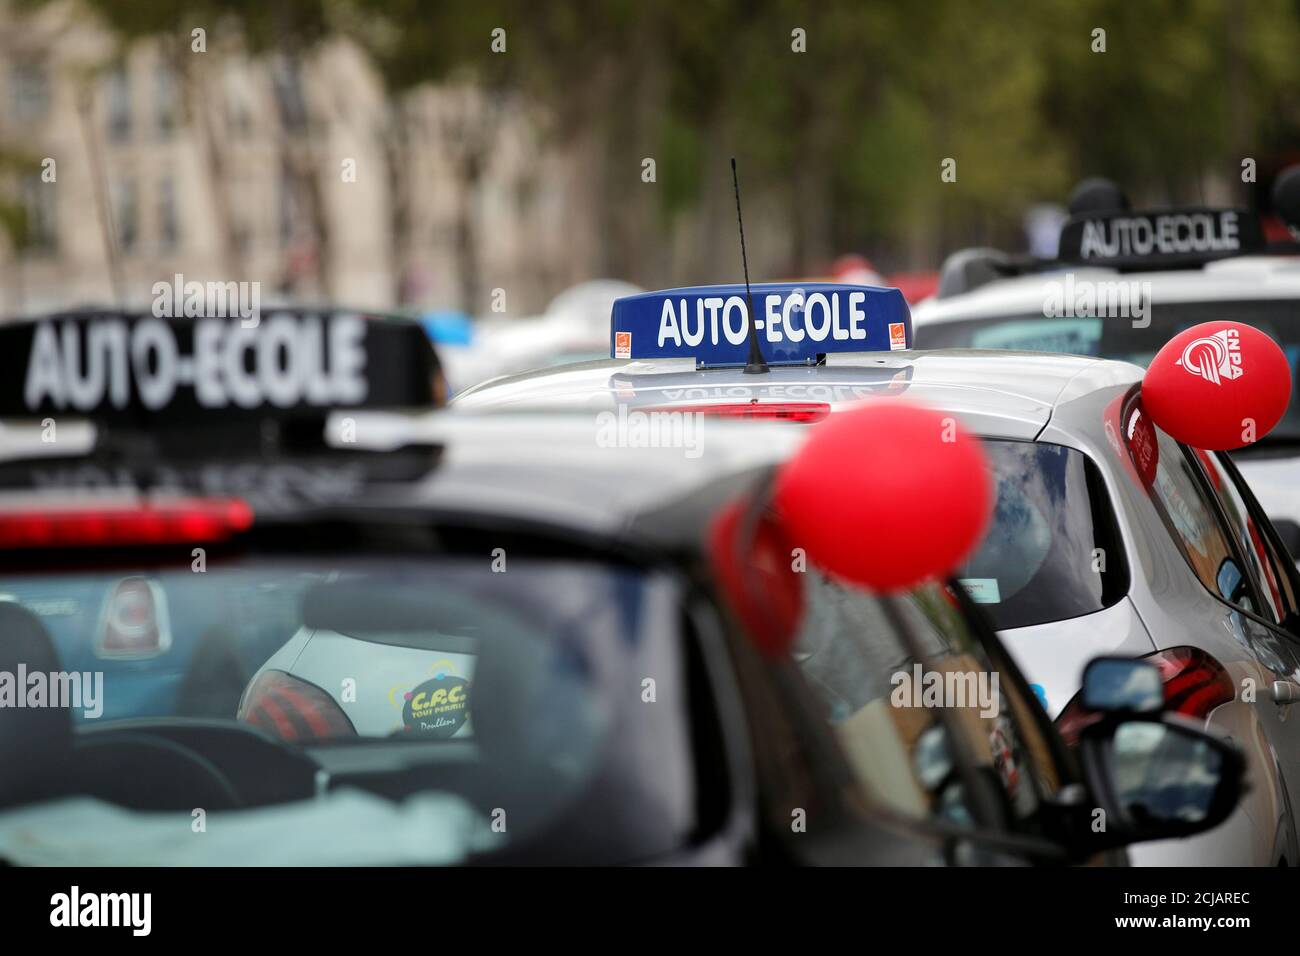 Los coches escolares franceses son vistos durante una protesta contra las solicitudes de formación en línea para los permisos de conducción en los Campos de Marte en París, Francia, el 18 de abril de 2017. REUTERS/Benoit Tessier Foto de stock